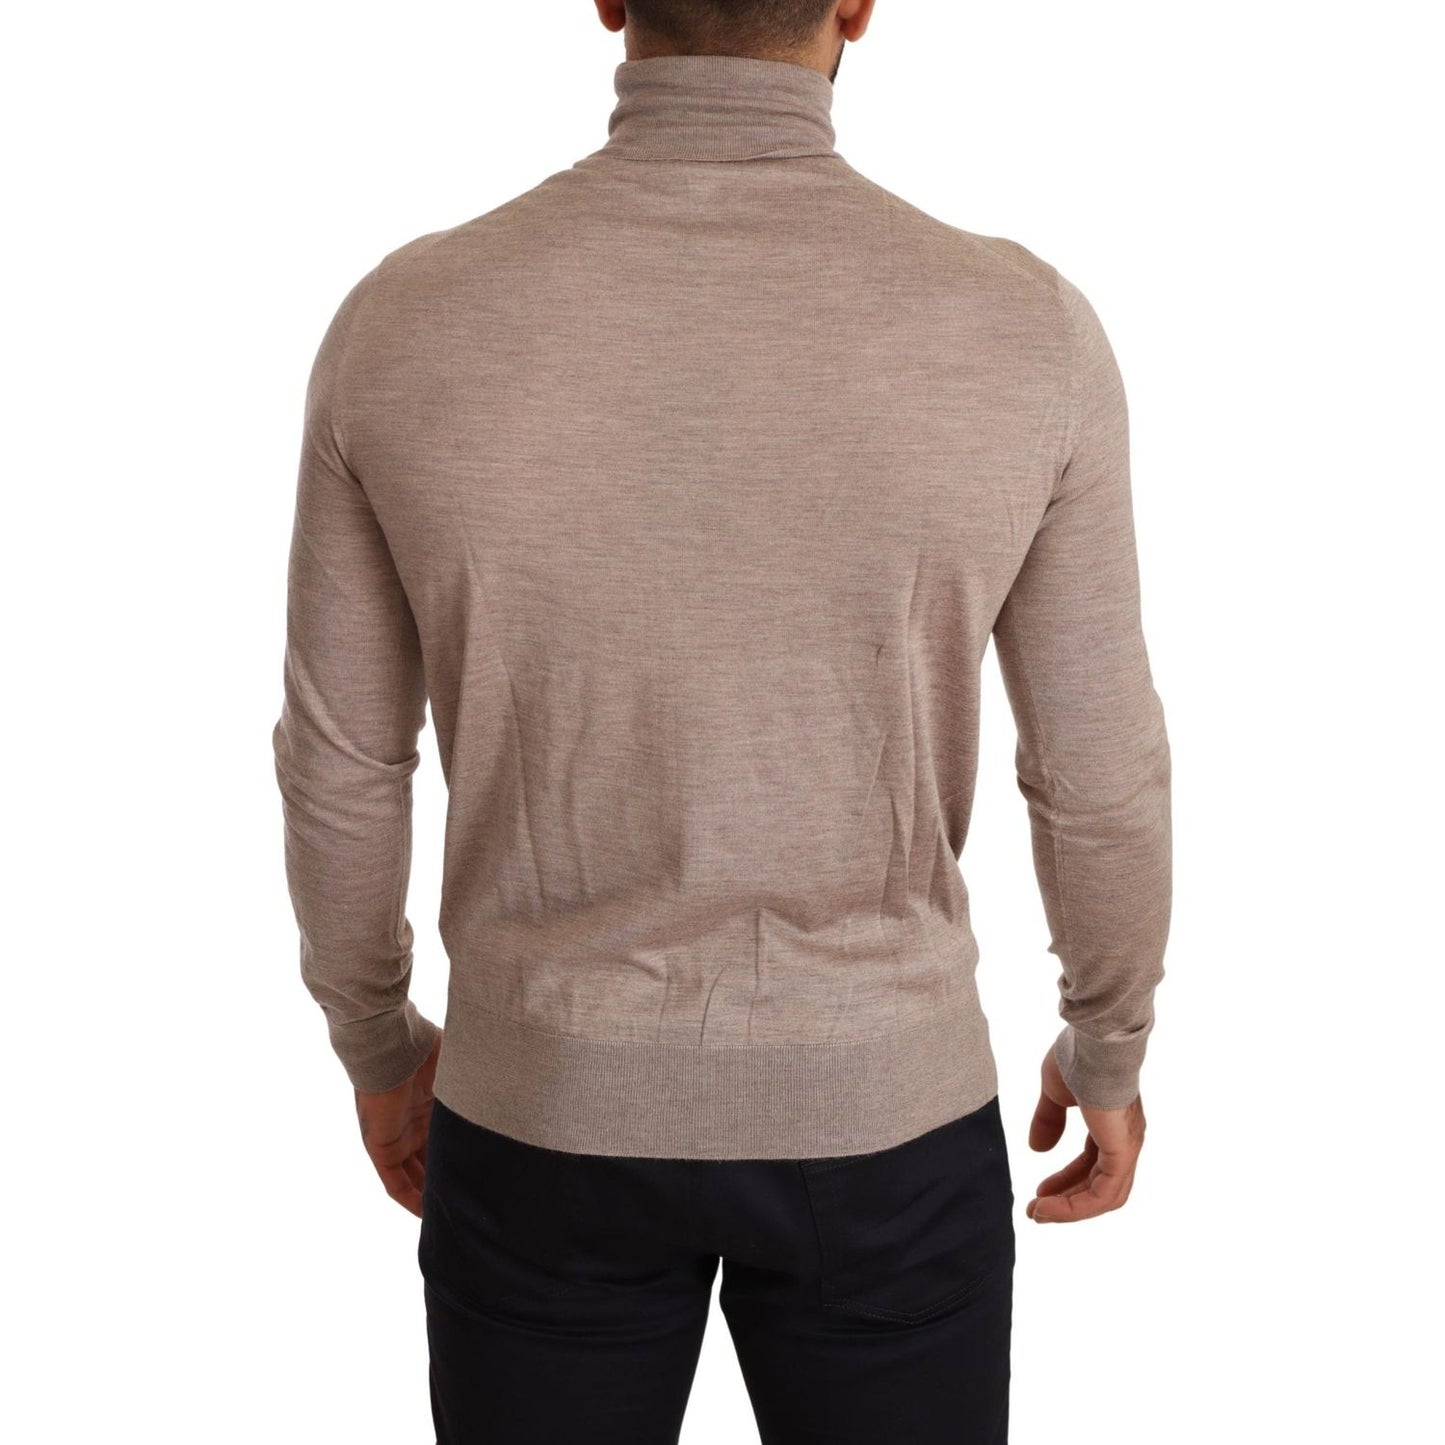 Dolce & Gabbana Beige Turtleneck Cashmere-Silk Blend Sweater beige-cashmere-turtleneck-pullover-sweater